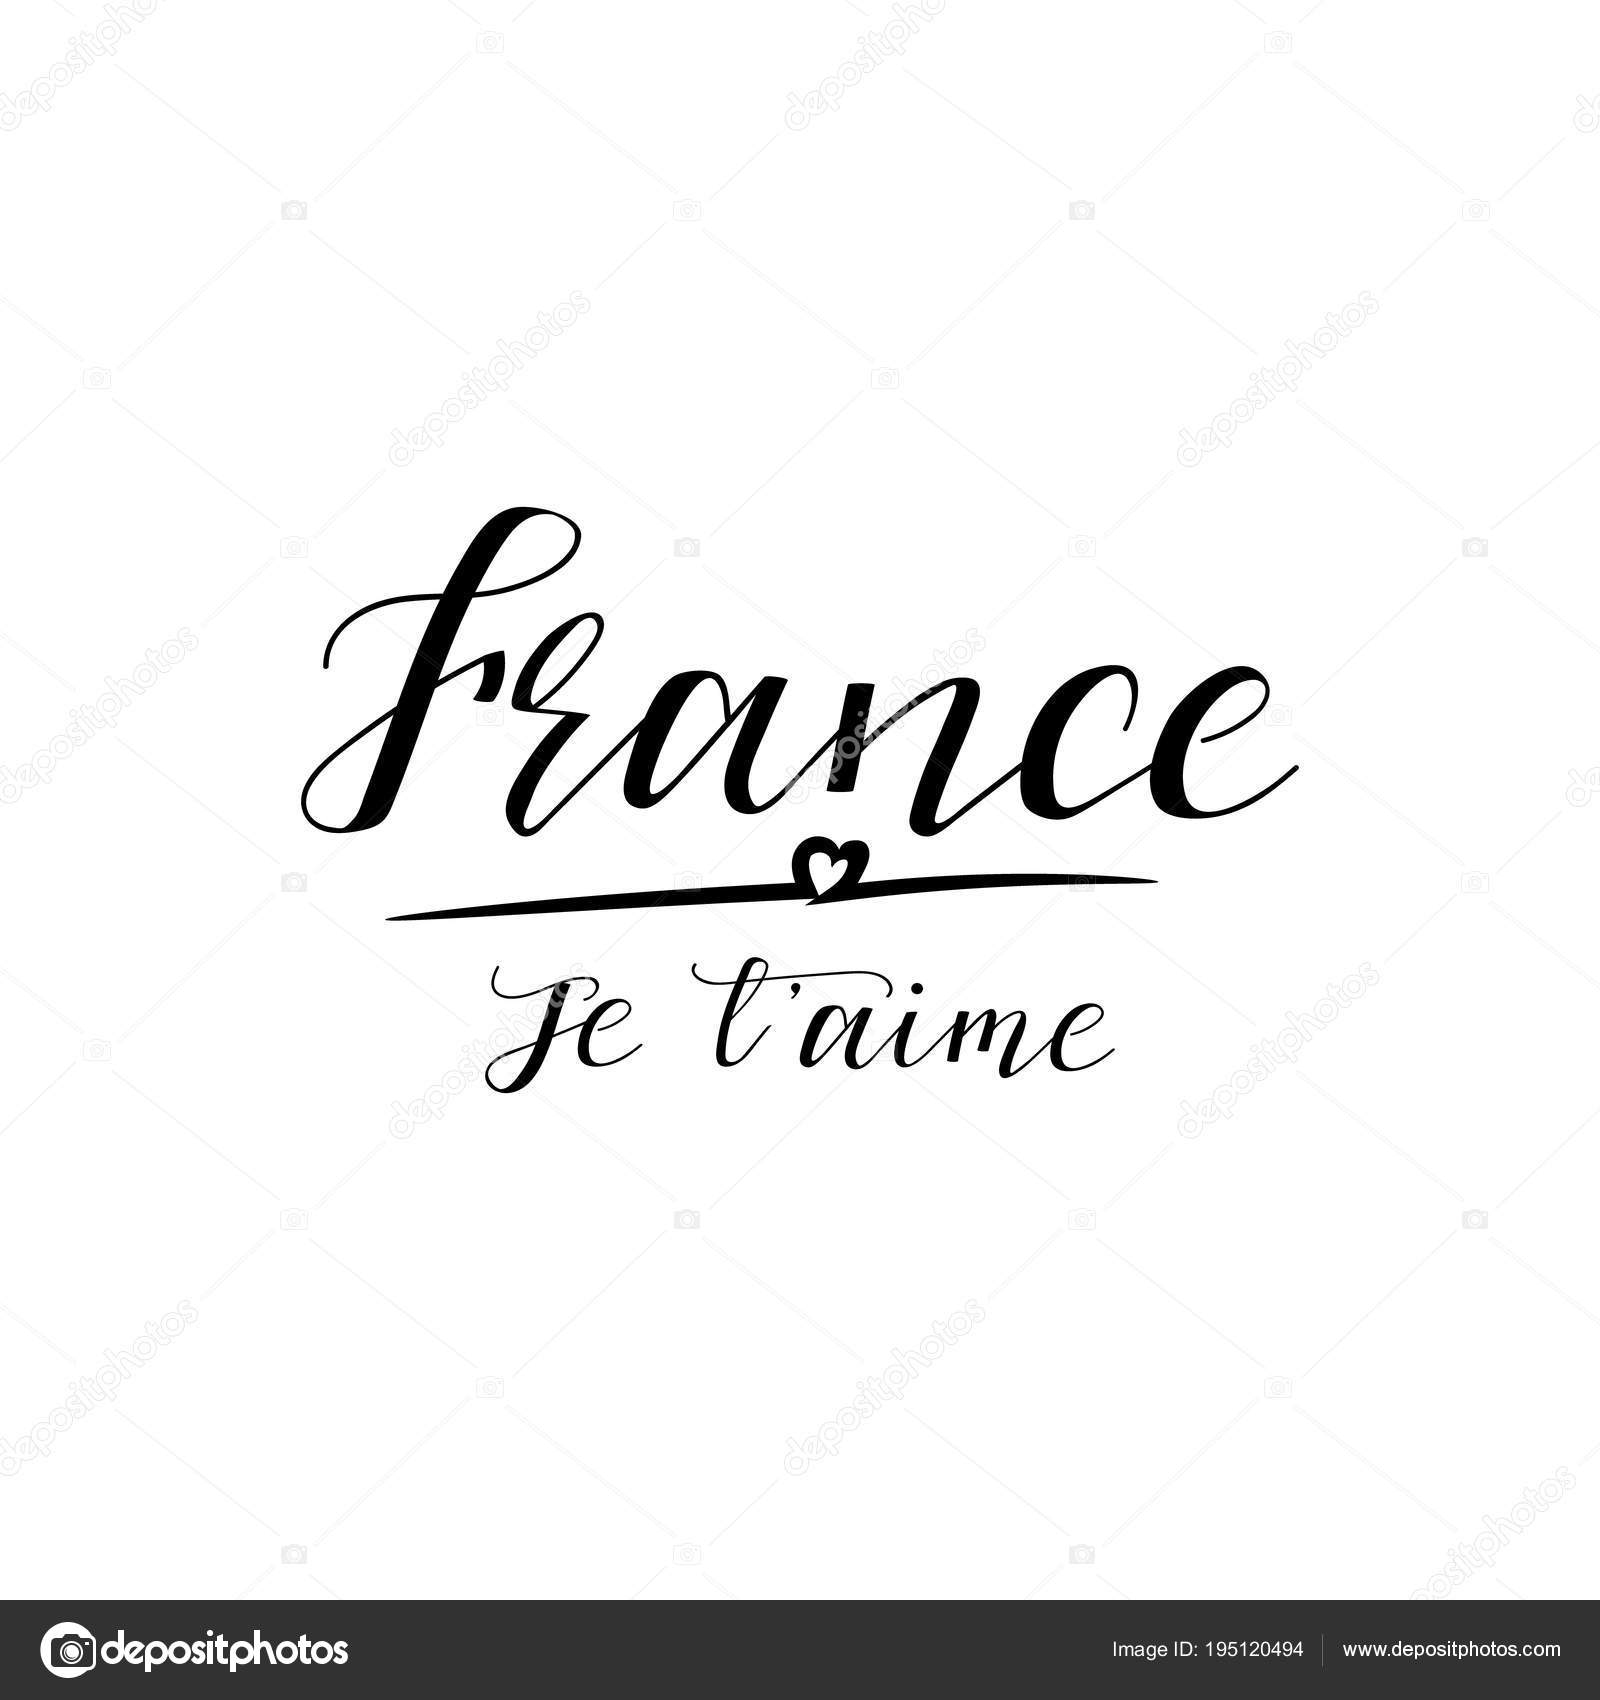 France надпись